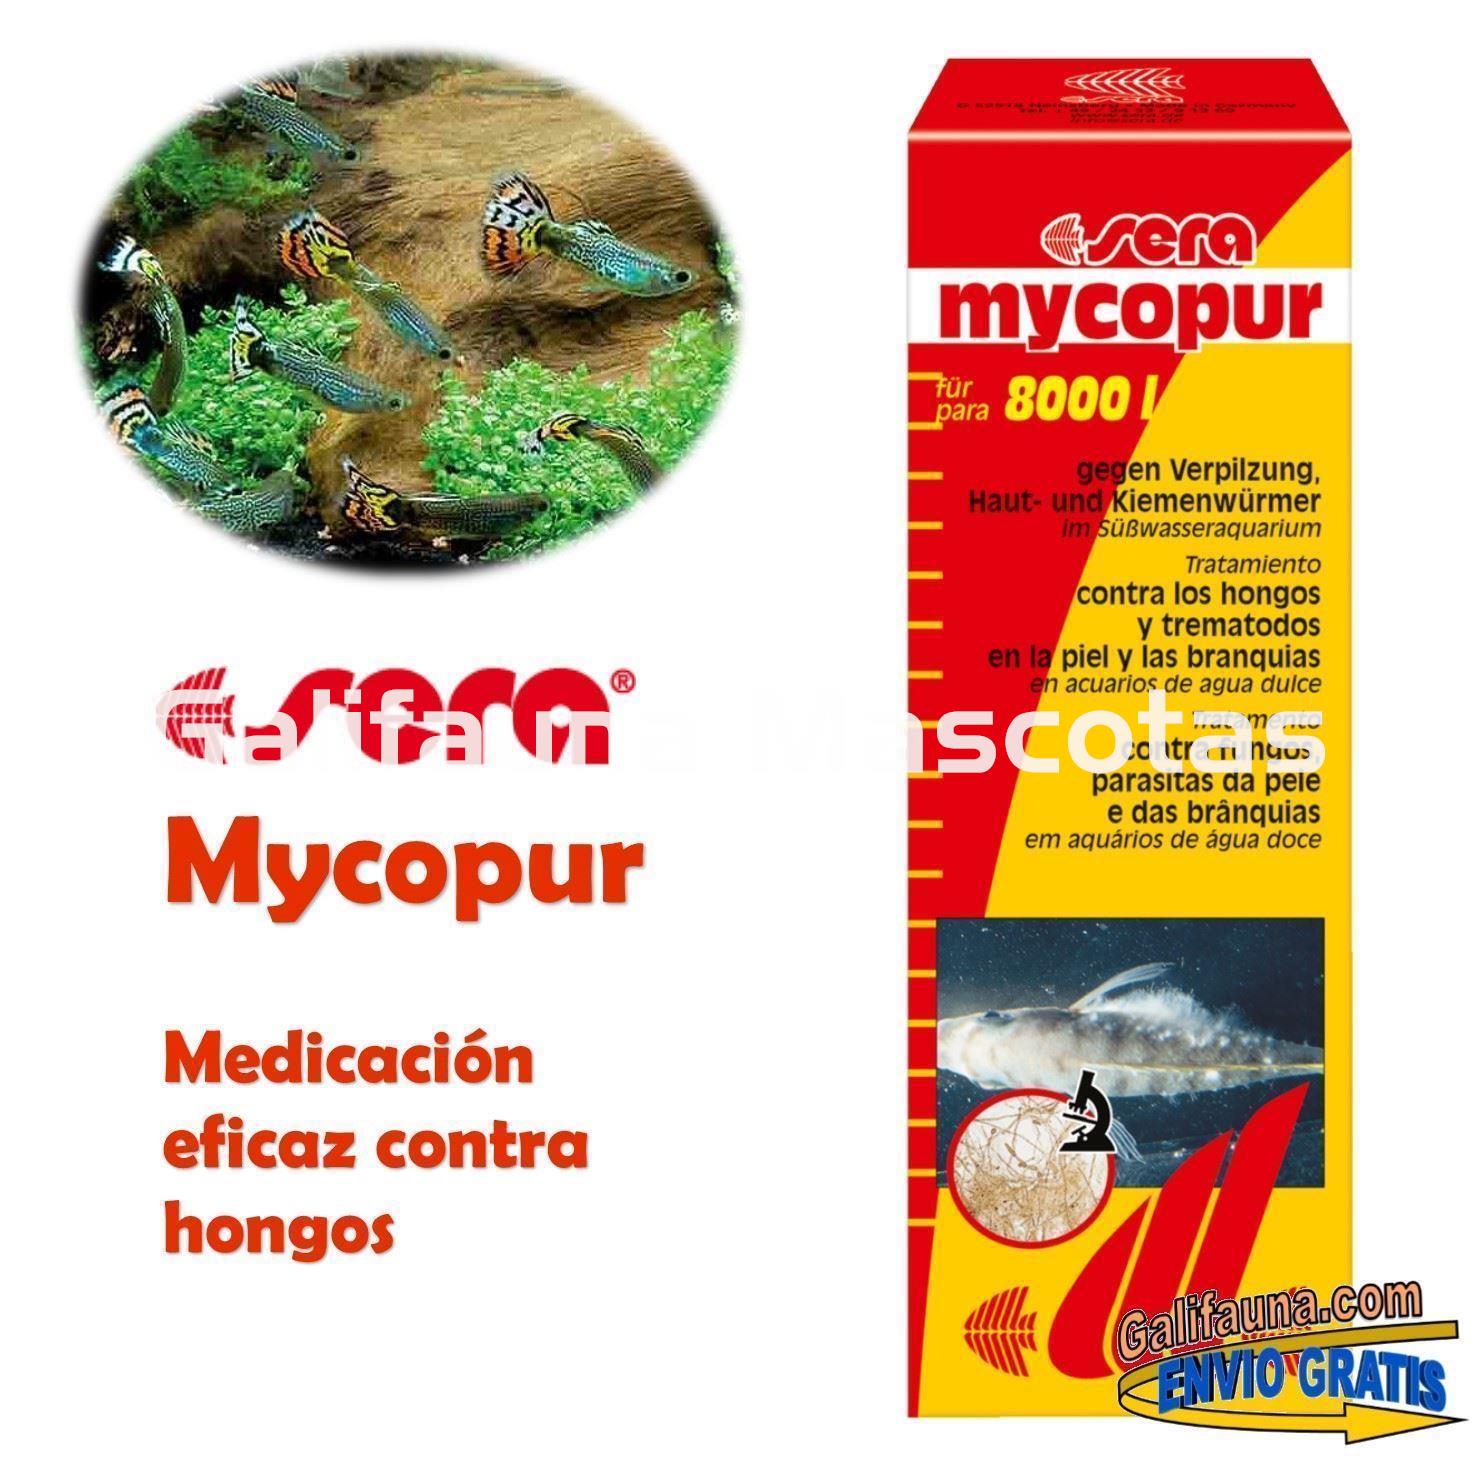 SERA Mycopur Grande 500 ml. Medicacion contra Hongos - Imagen 1